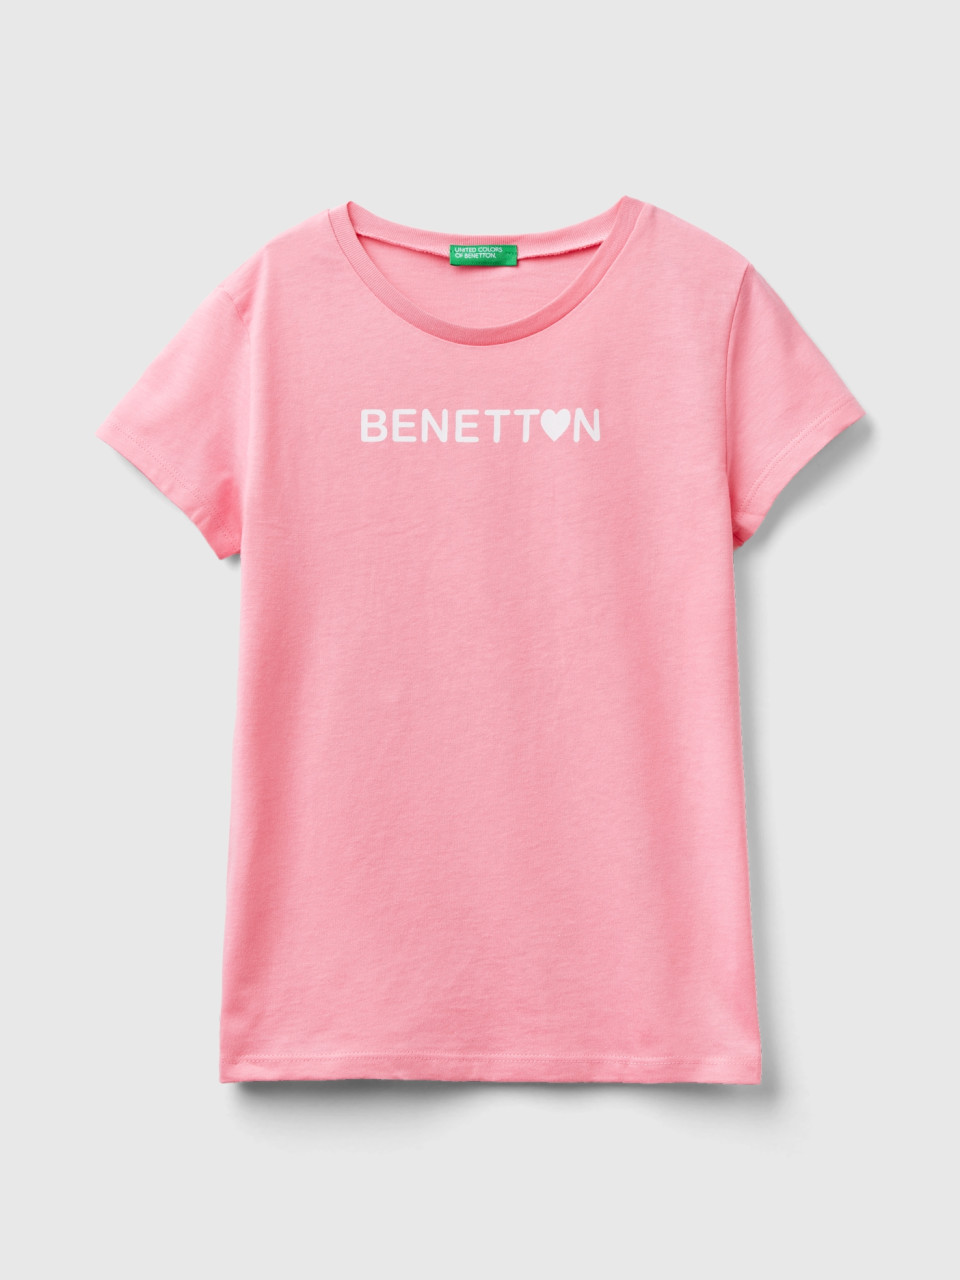 Benetton, Maglietta Con Logo 100% Cotone, Rosa, Bambini